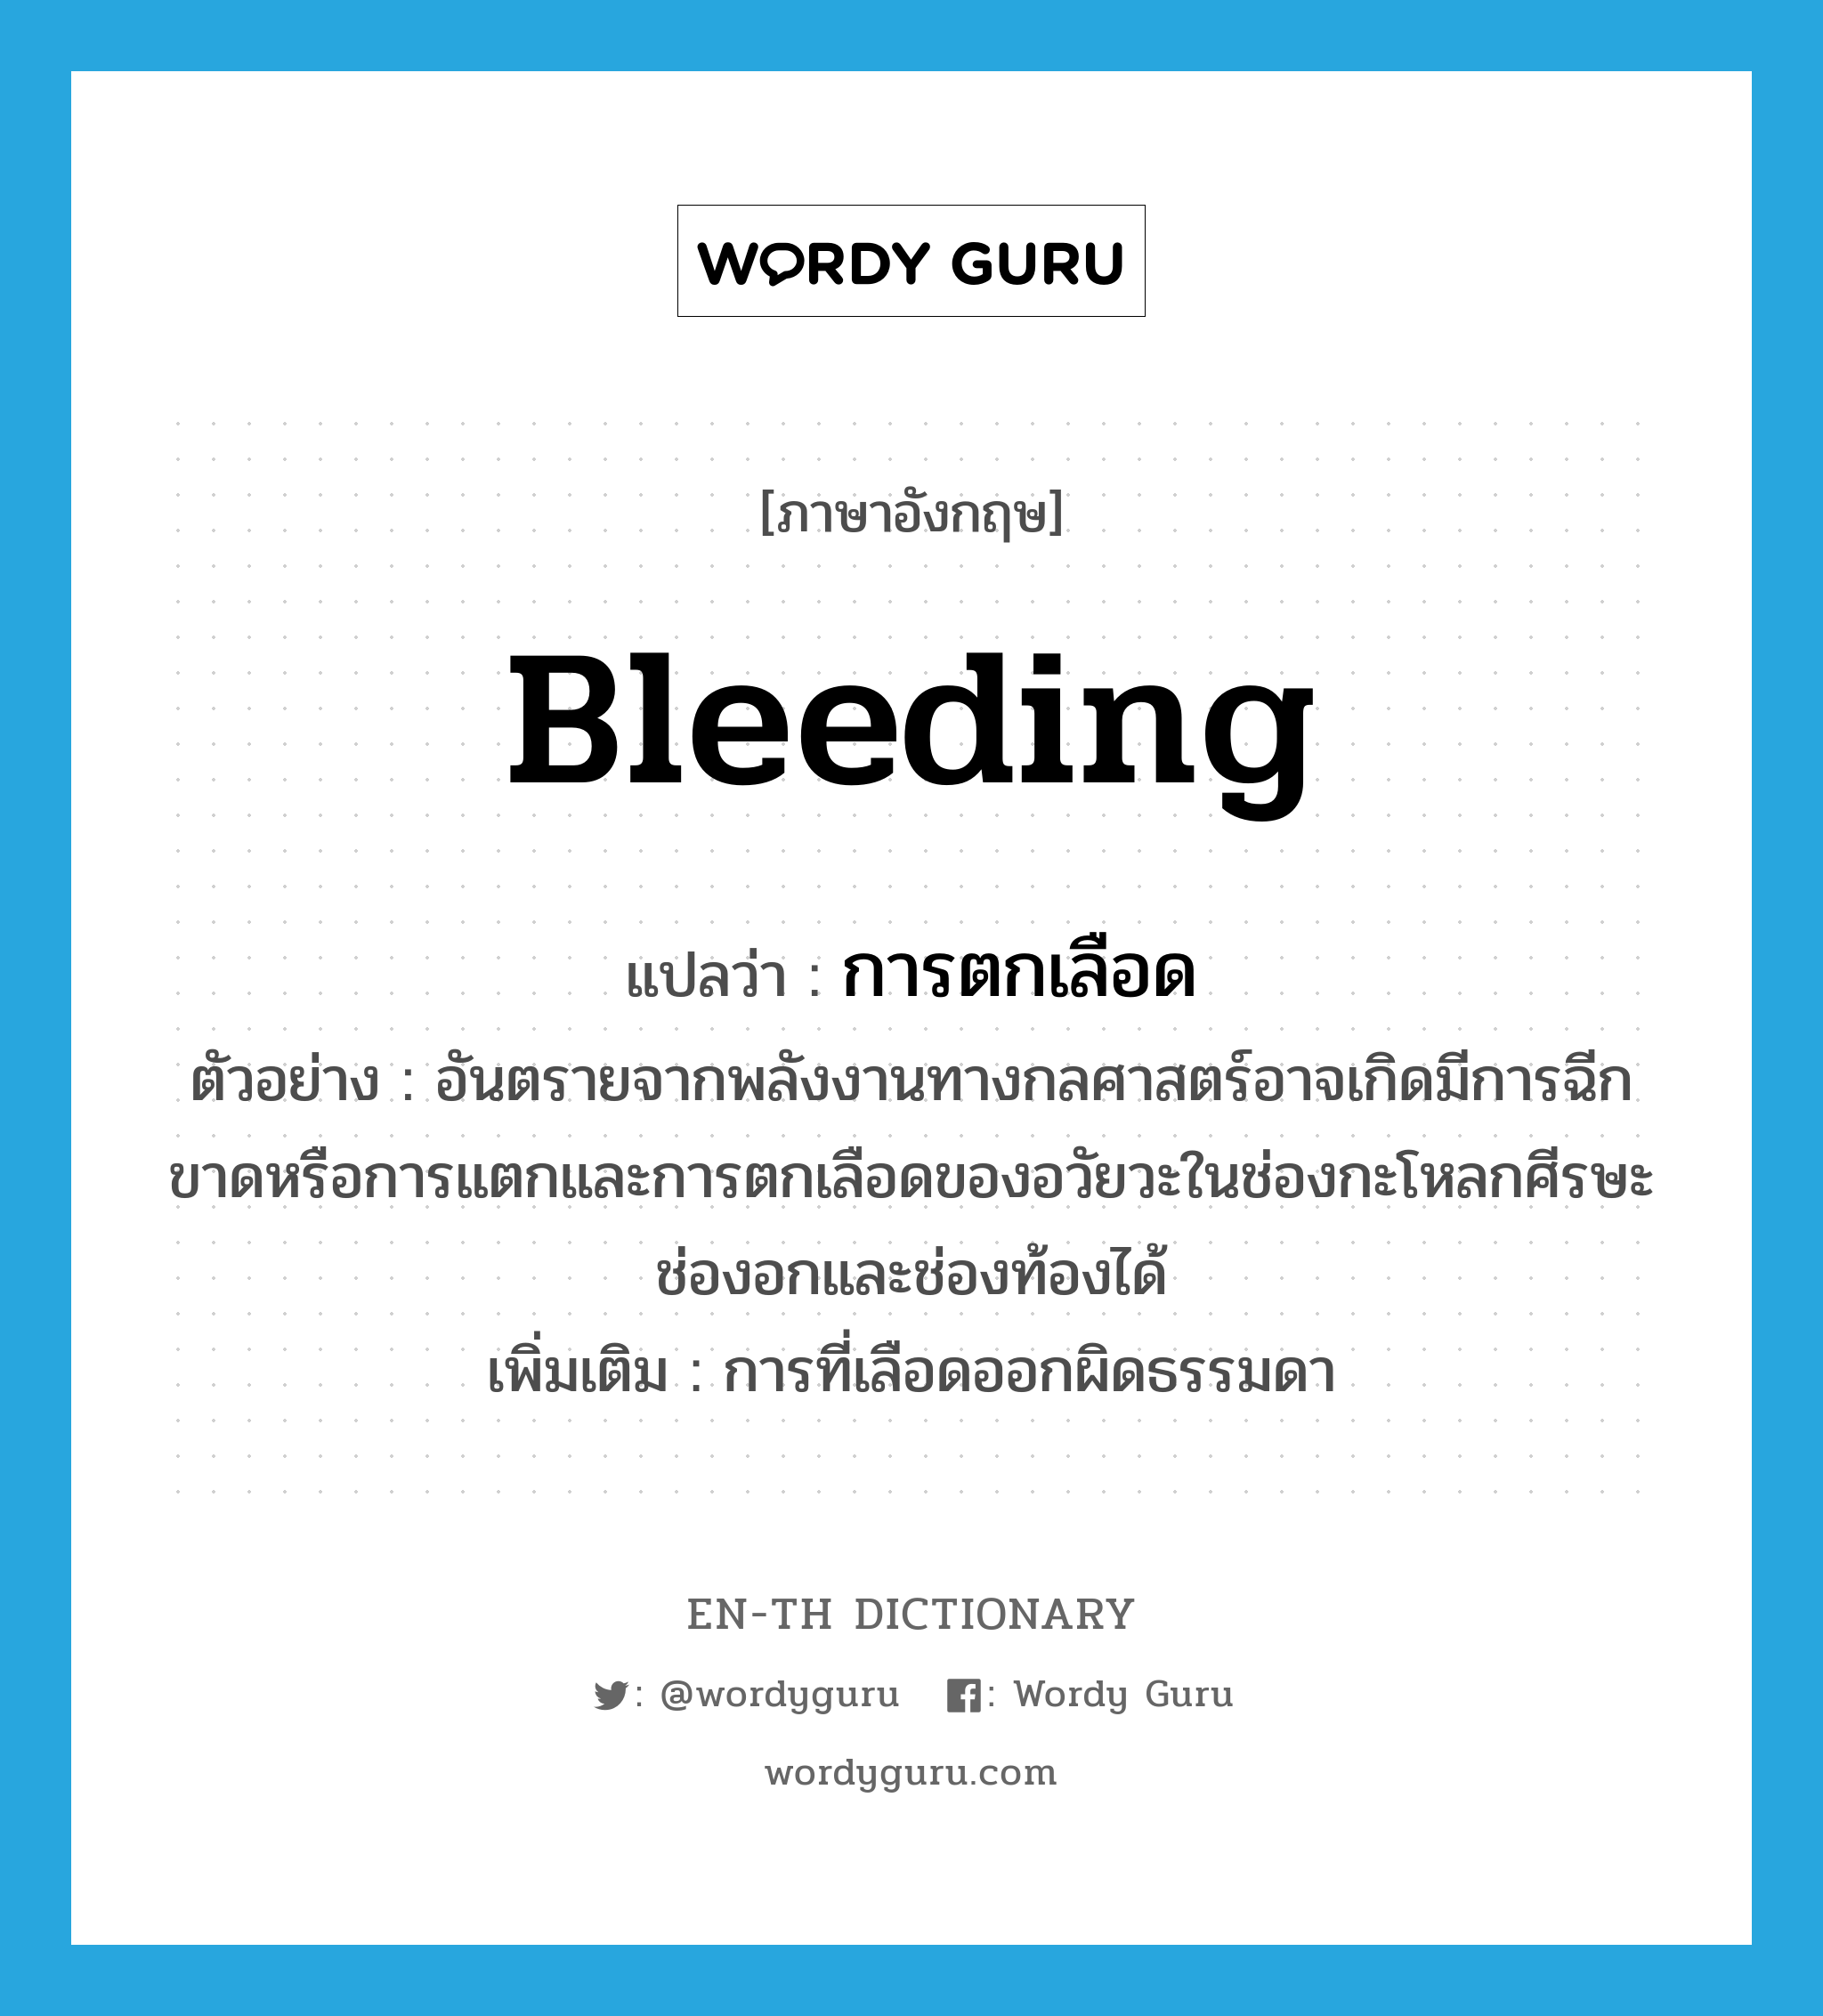 bleeding แปลว่า?, คำศัพท์ภาษาอังกฤษ bleeding แปลว่า การตกเลือด ประเภท N ตัวอย่าง อันตรายจากพลังงานทางกลศาสตร์อาจเกิดมีการฉีกขาดหรือการแตกและการตกเลือดของอวัยวะในช่องกะโหลกศีรษะช่องอกและช่องท้องได้ เพิ่มเติม การที่เลือดออกผิดธรรมดา หมวด N